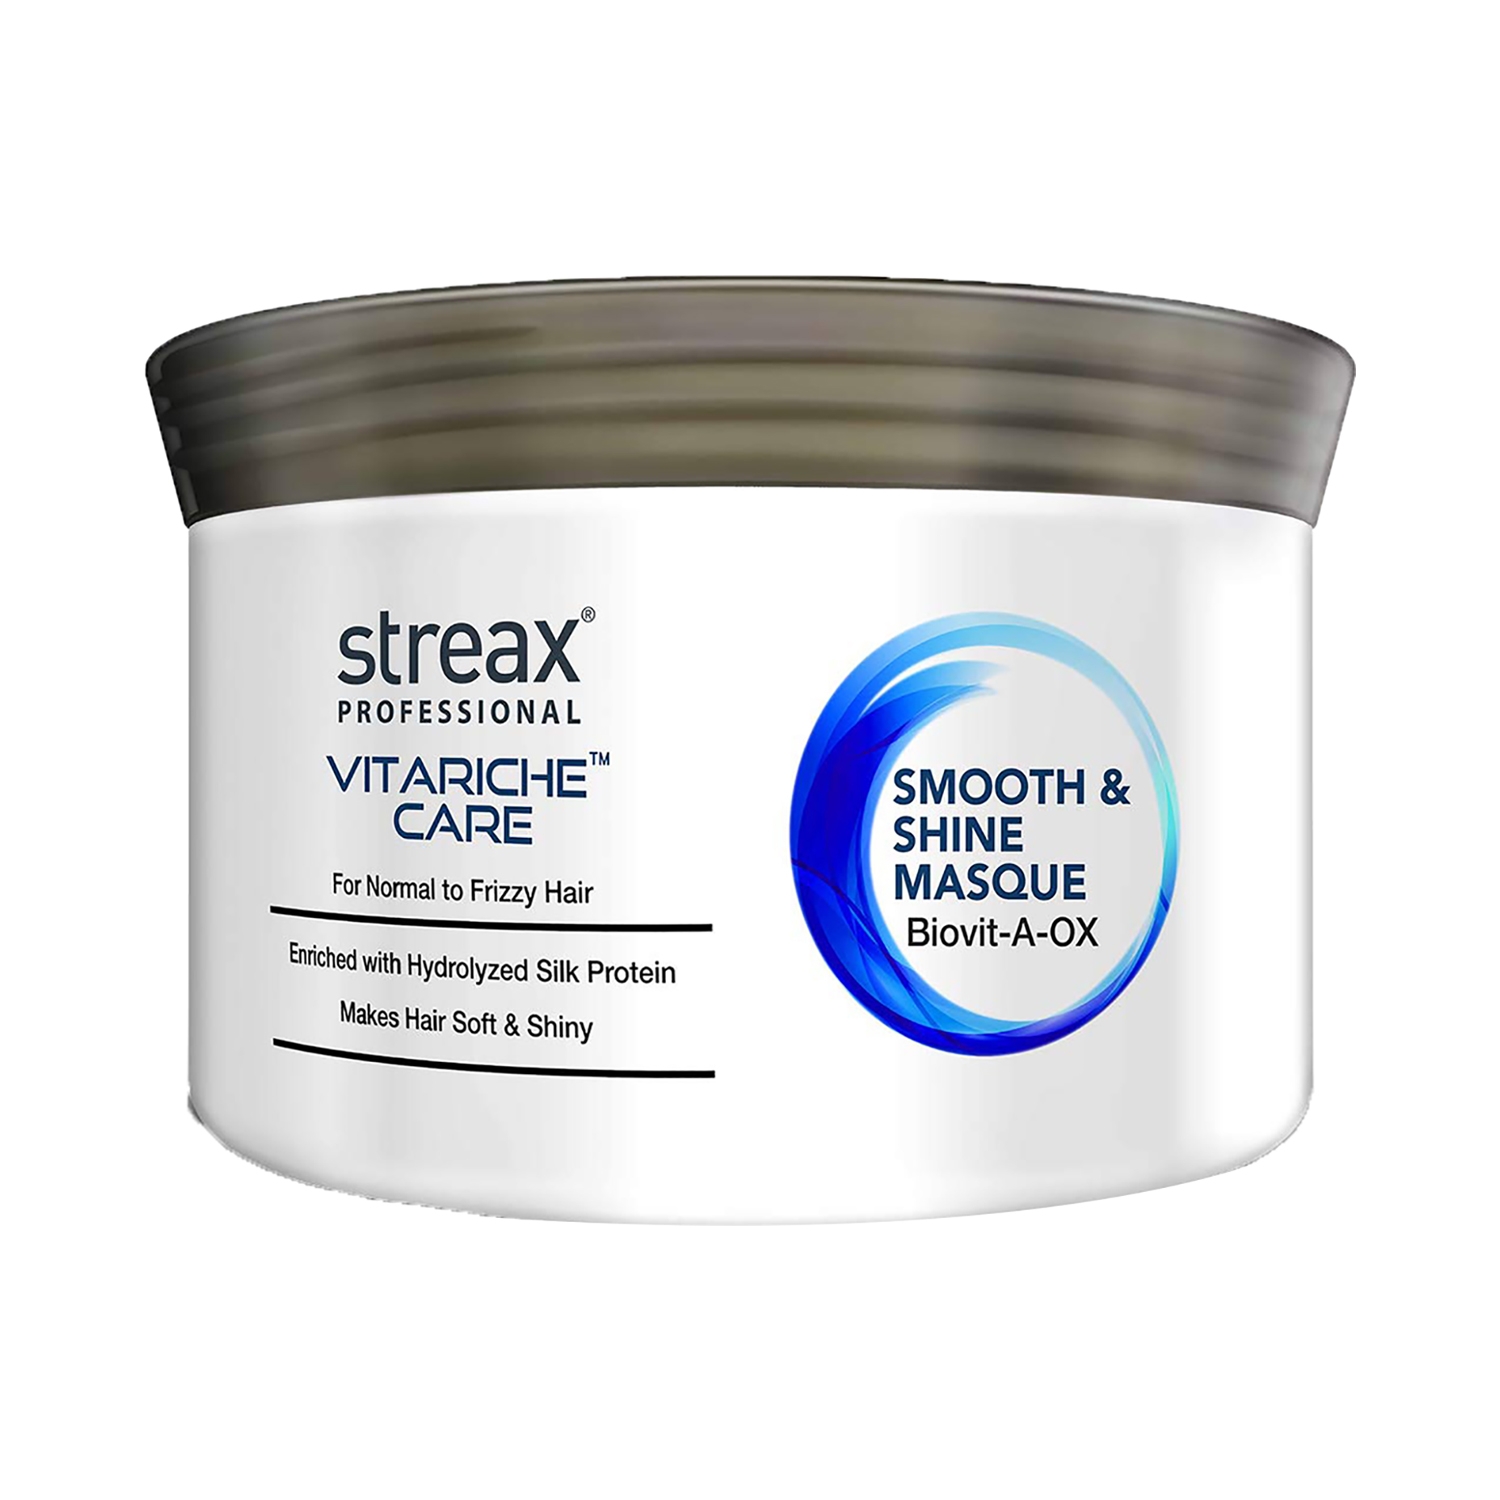 Streax Professional Vitarich Care Smooth & Shine Masque (200g)